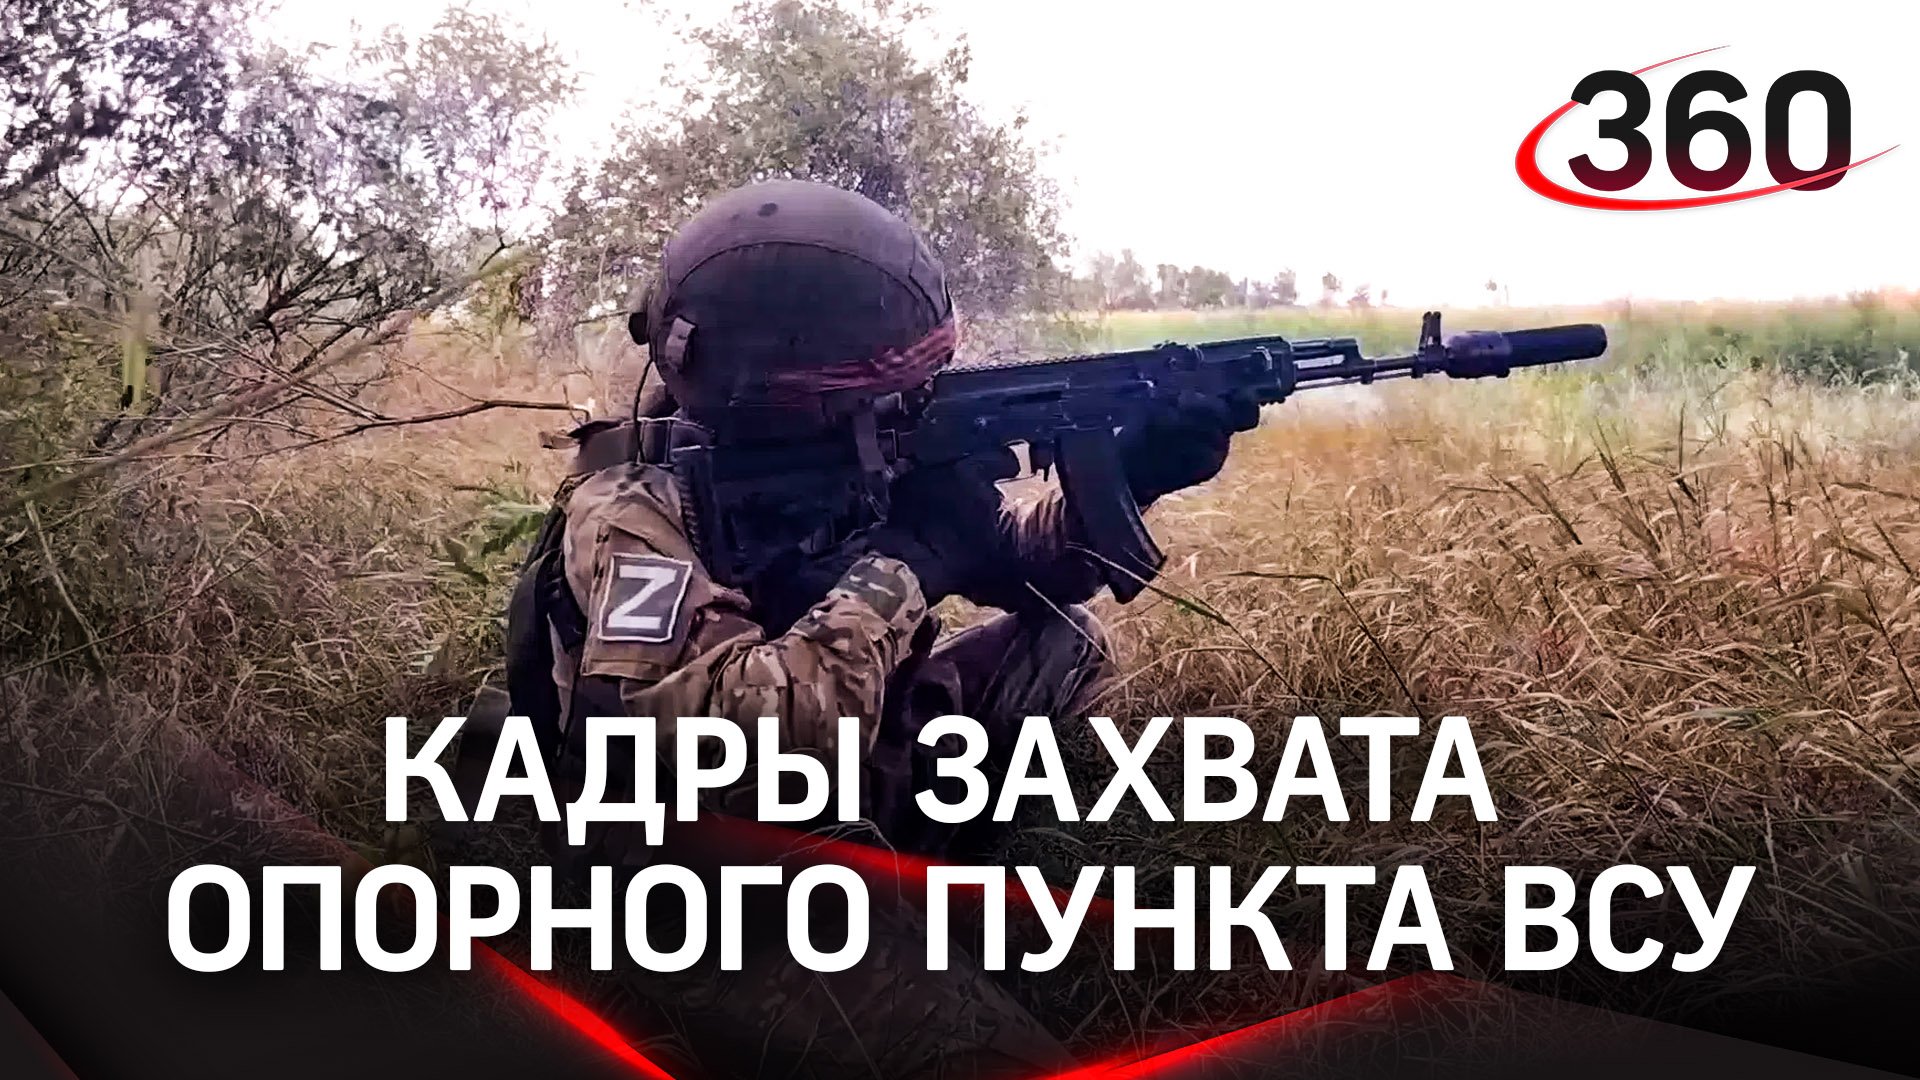 Терминатор в действии: кадры боя и захвата лесного опорного пункта ВСУ показало Минобороны России